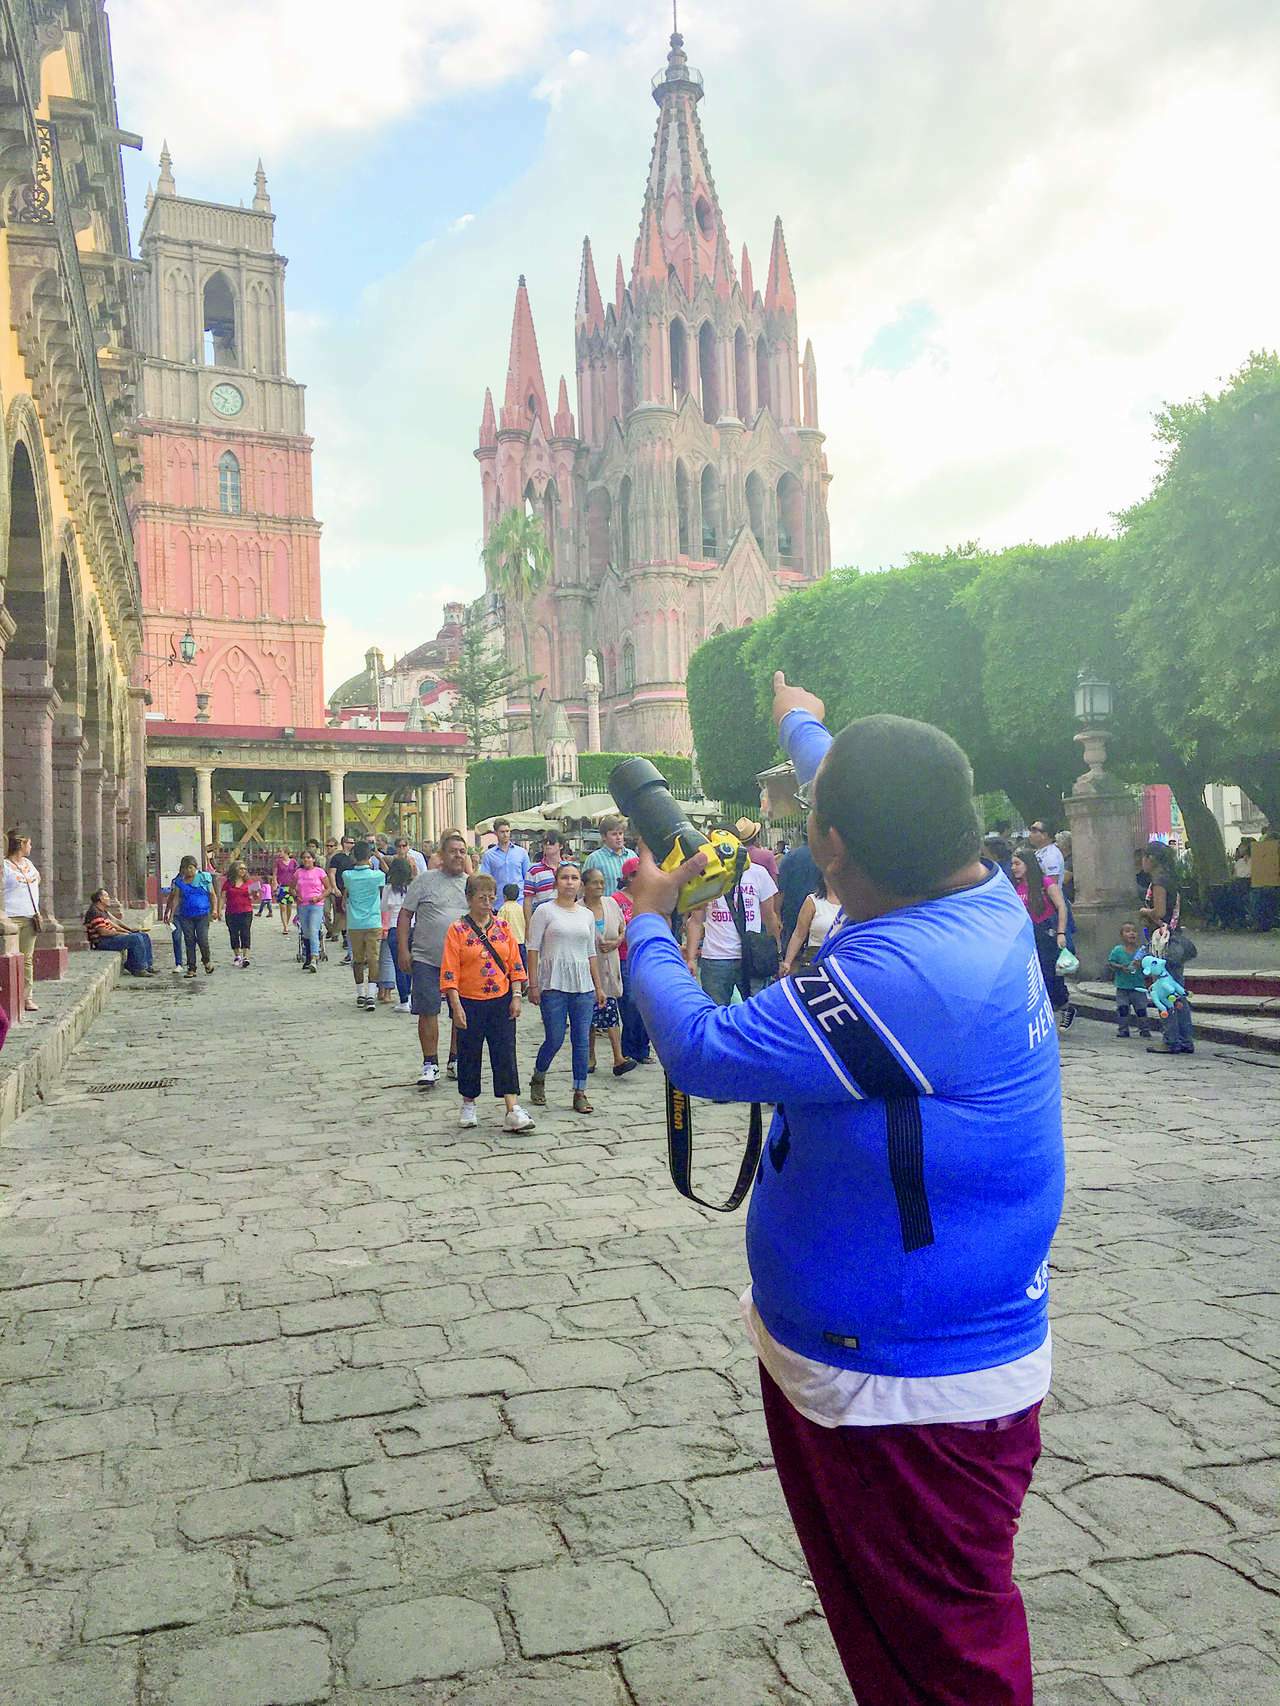 Luis Fer, quien incluso tiene conocimientos de fotografía y filmación a nivel profesional, recorrió pasajes turísticos captando diversos retratos y paisajes del estado de Guanajuato.
